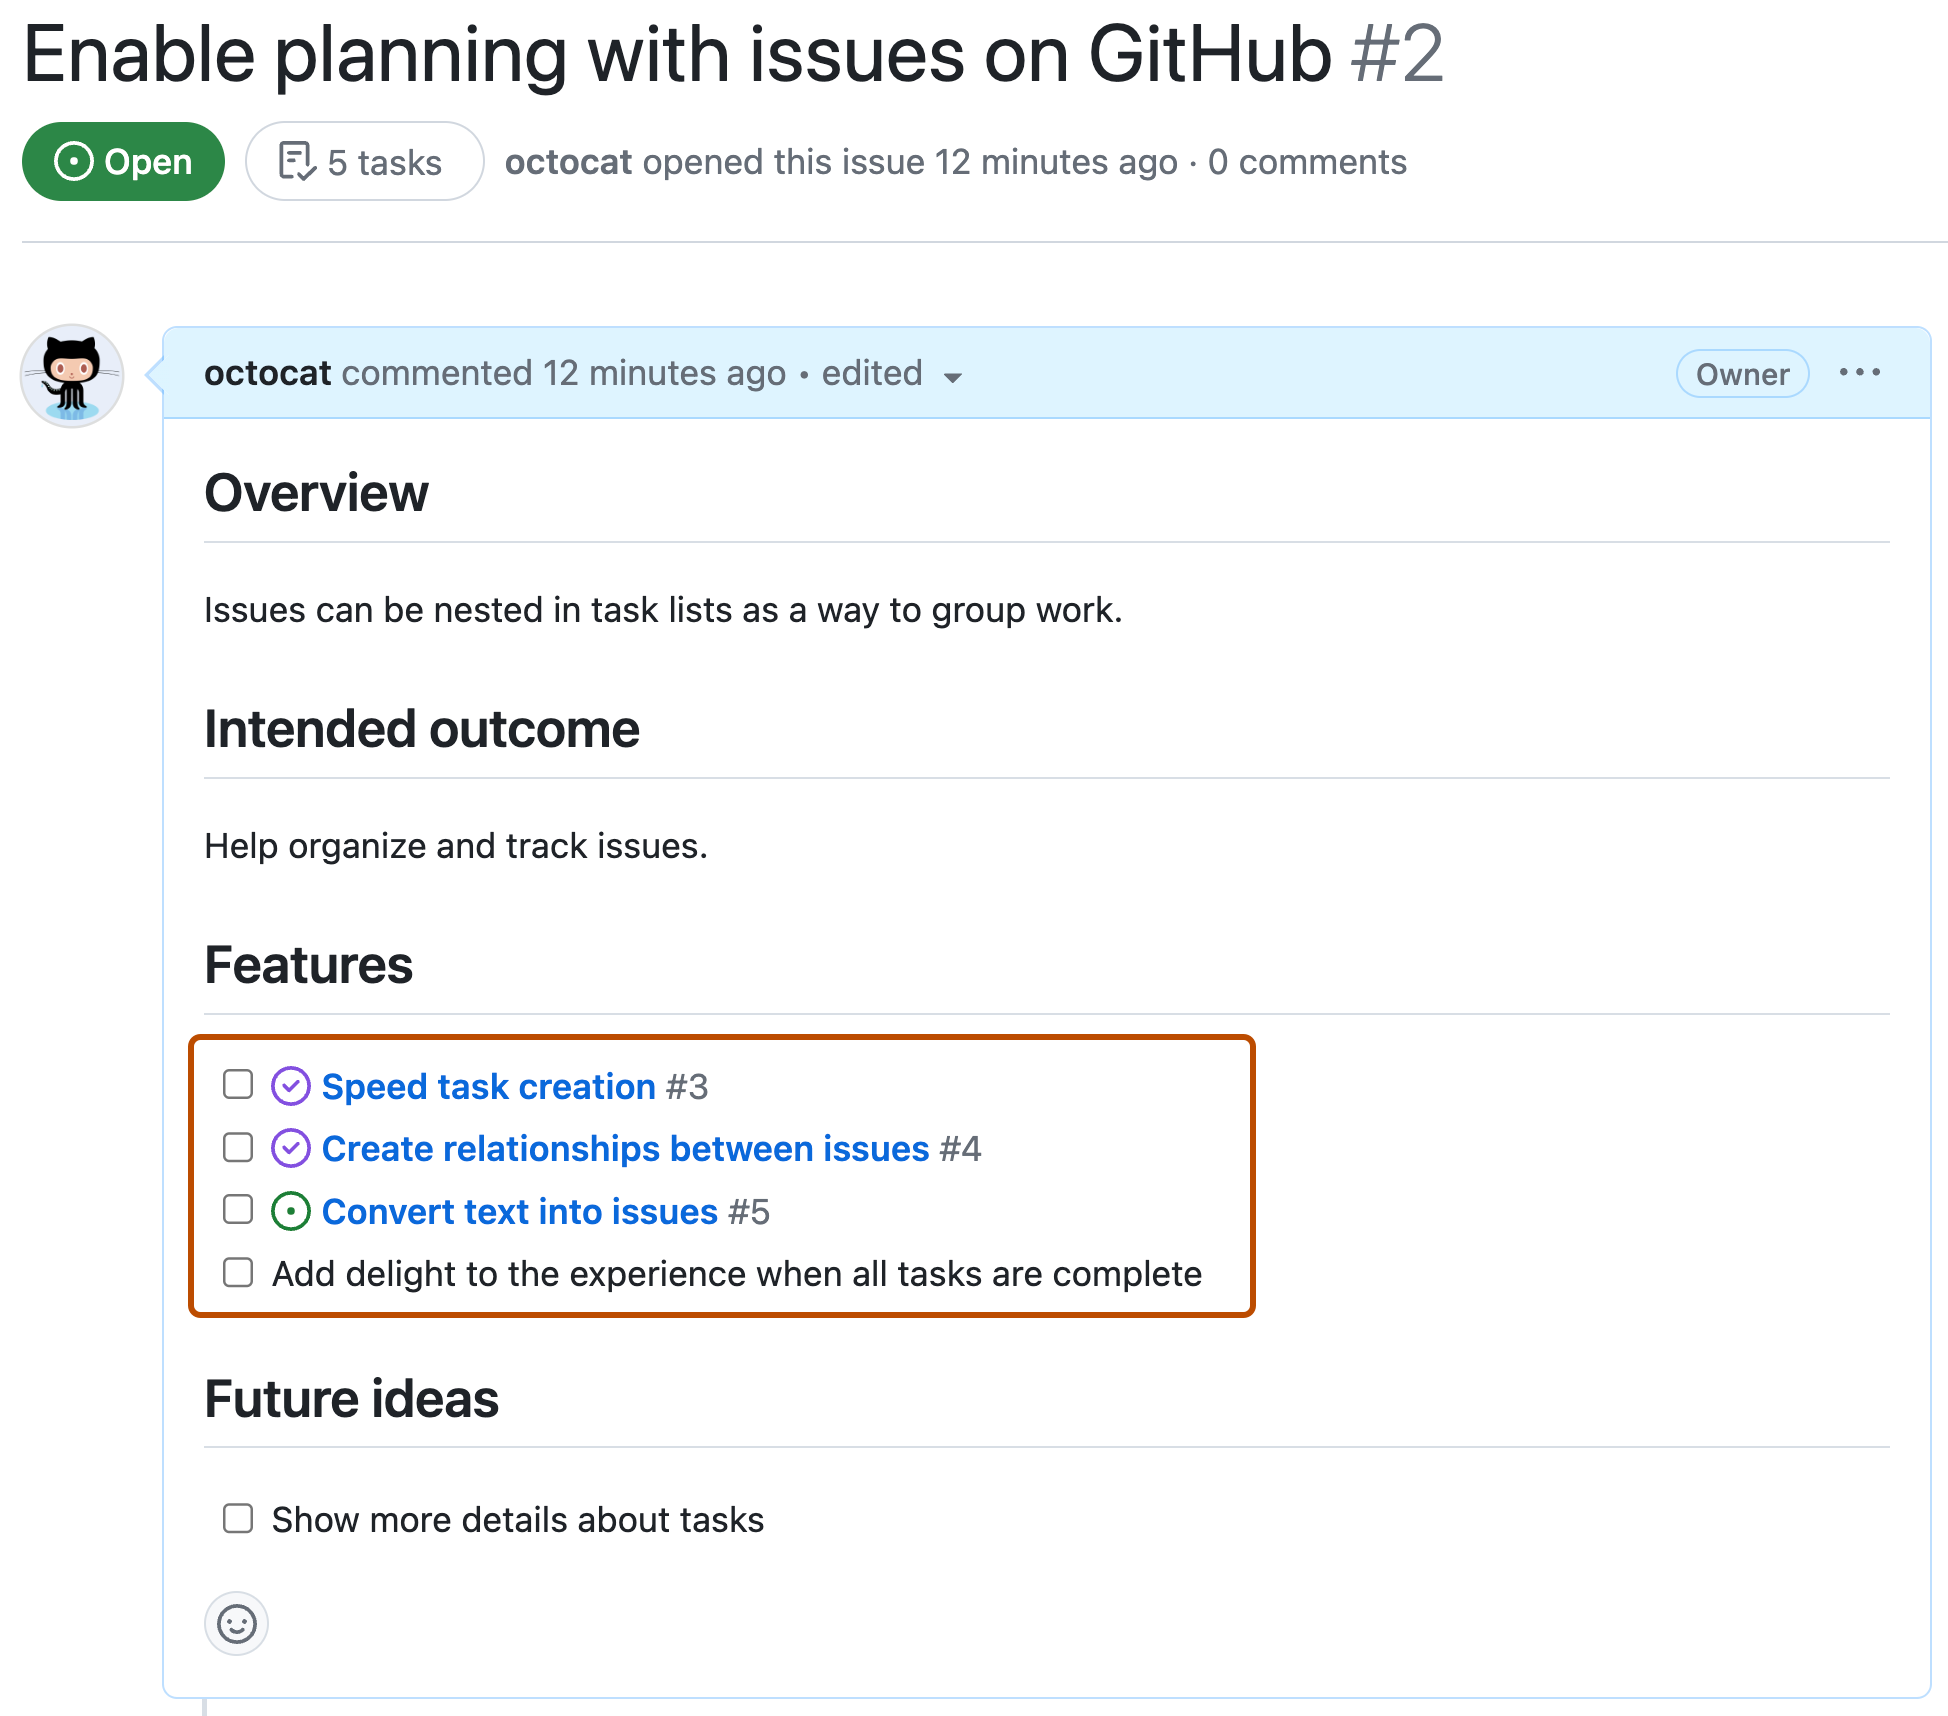 Снимок экрана: проблема с GitHub с списком задач в заголовке "Функции". Некоторые элементы проверка по мере выполнения, другие не проверка как неуправляемые. Три элемента списка связаны с другими данными GitHub Issues.